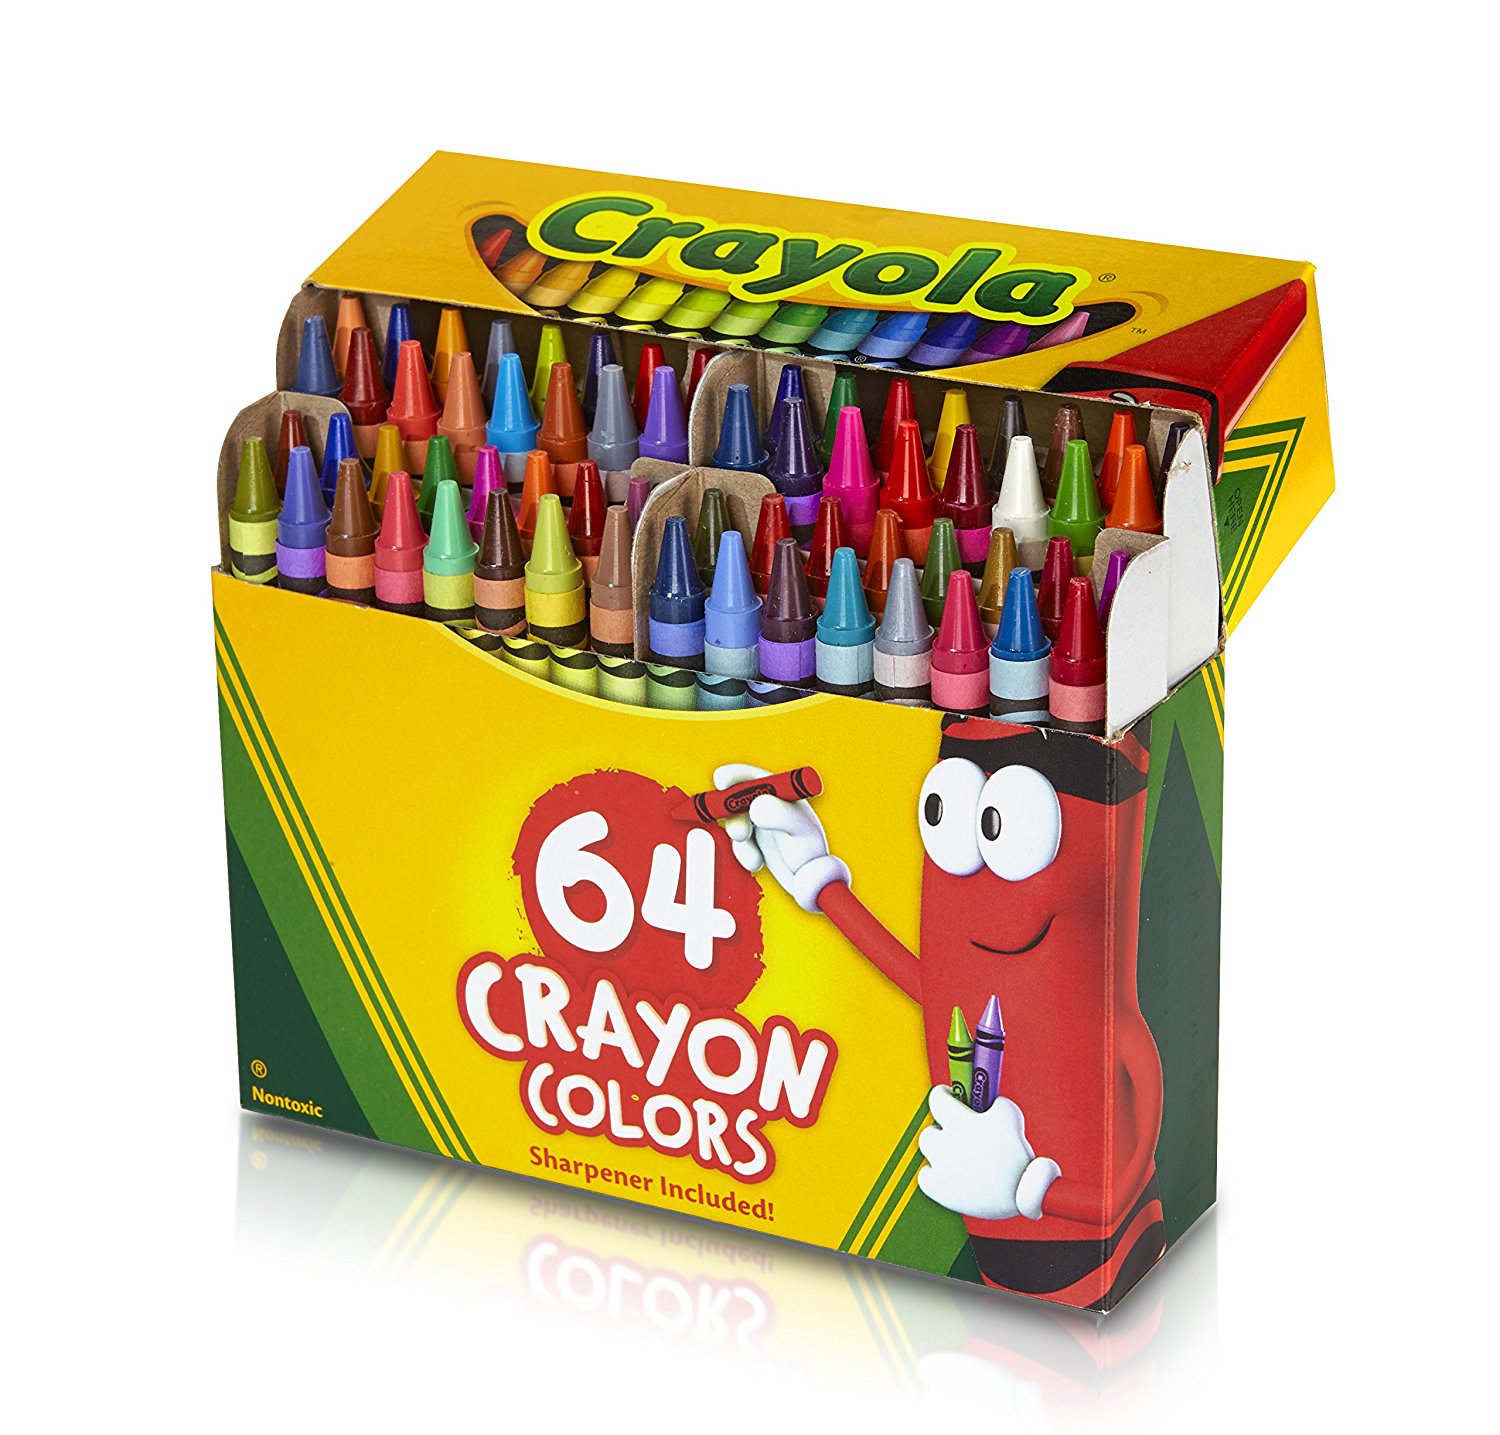 Crayola 64 Ct Crayons – Just $2.94!